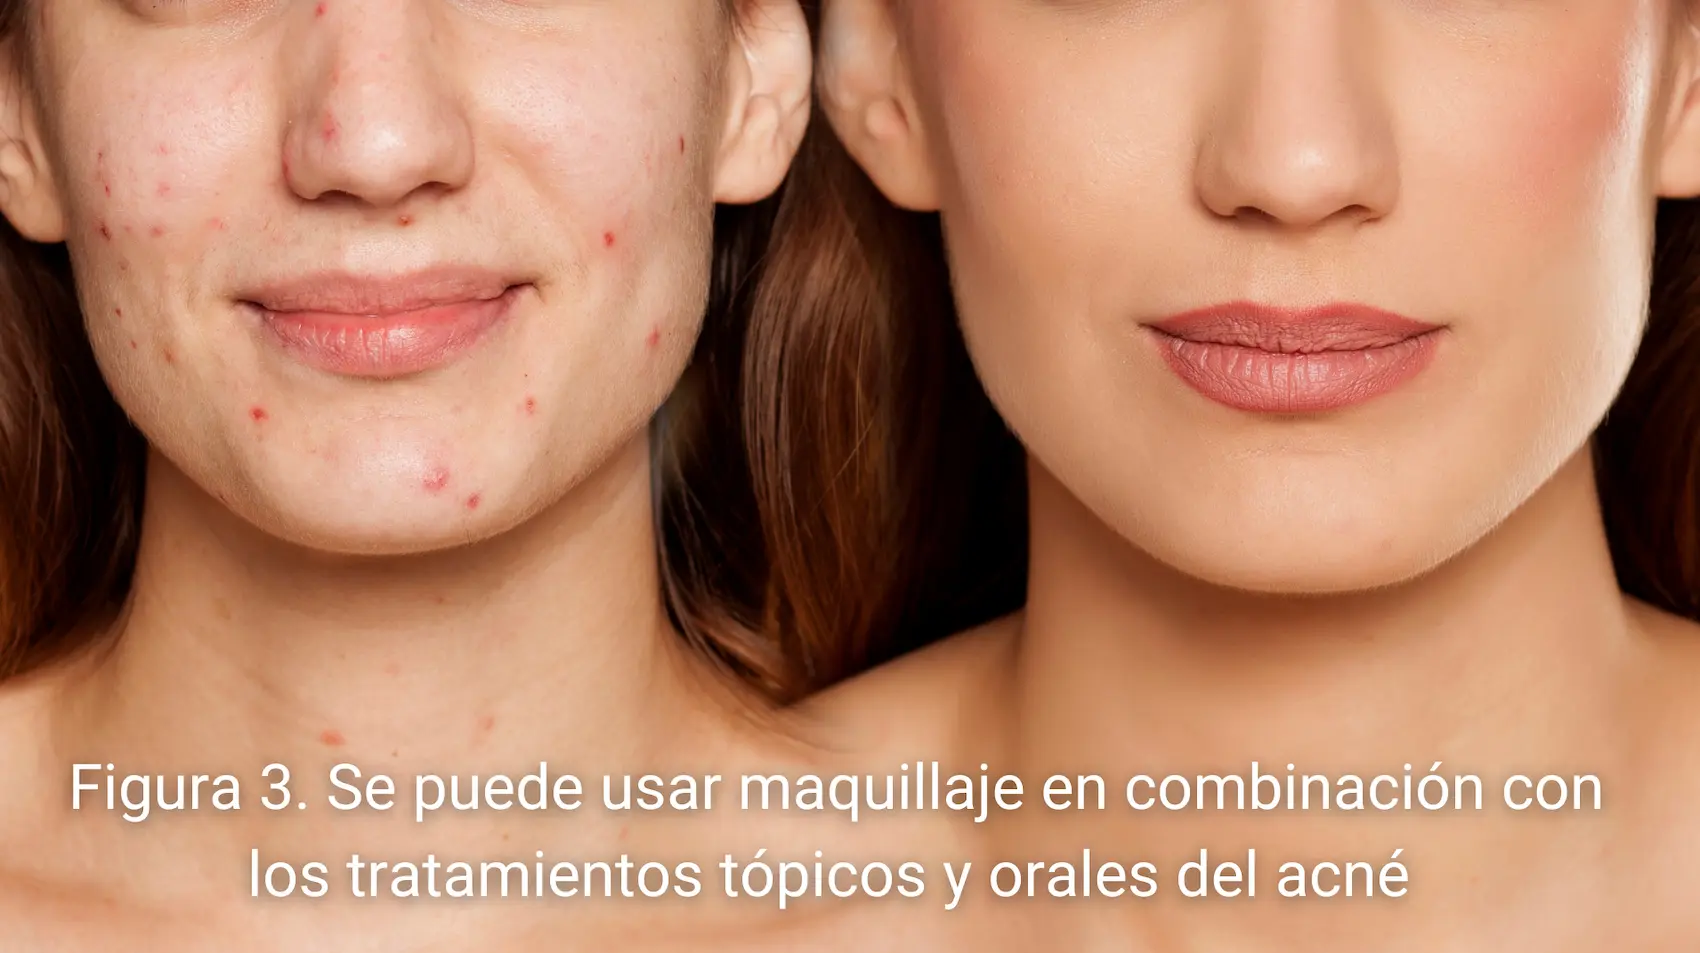 Maquillaje y tratamientos tópicos en el acné